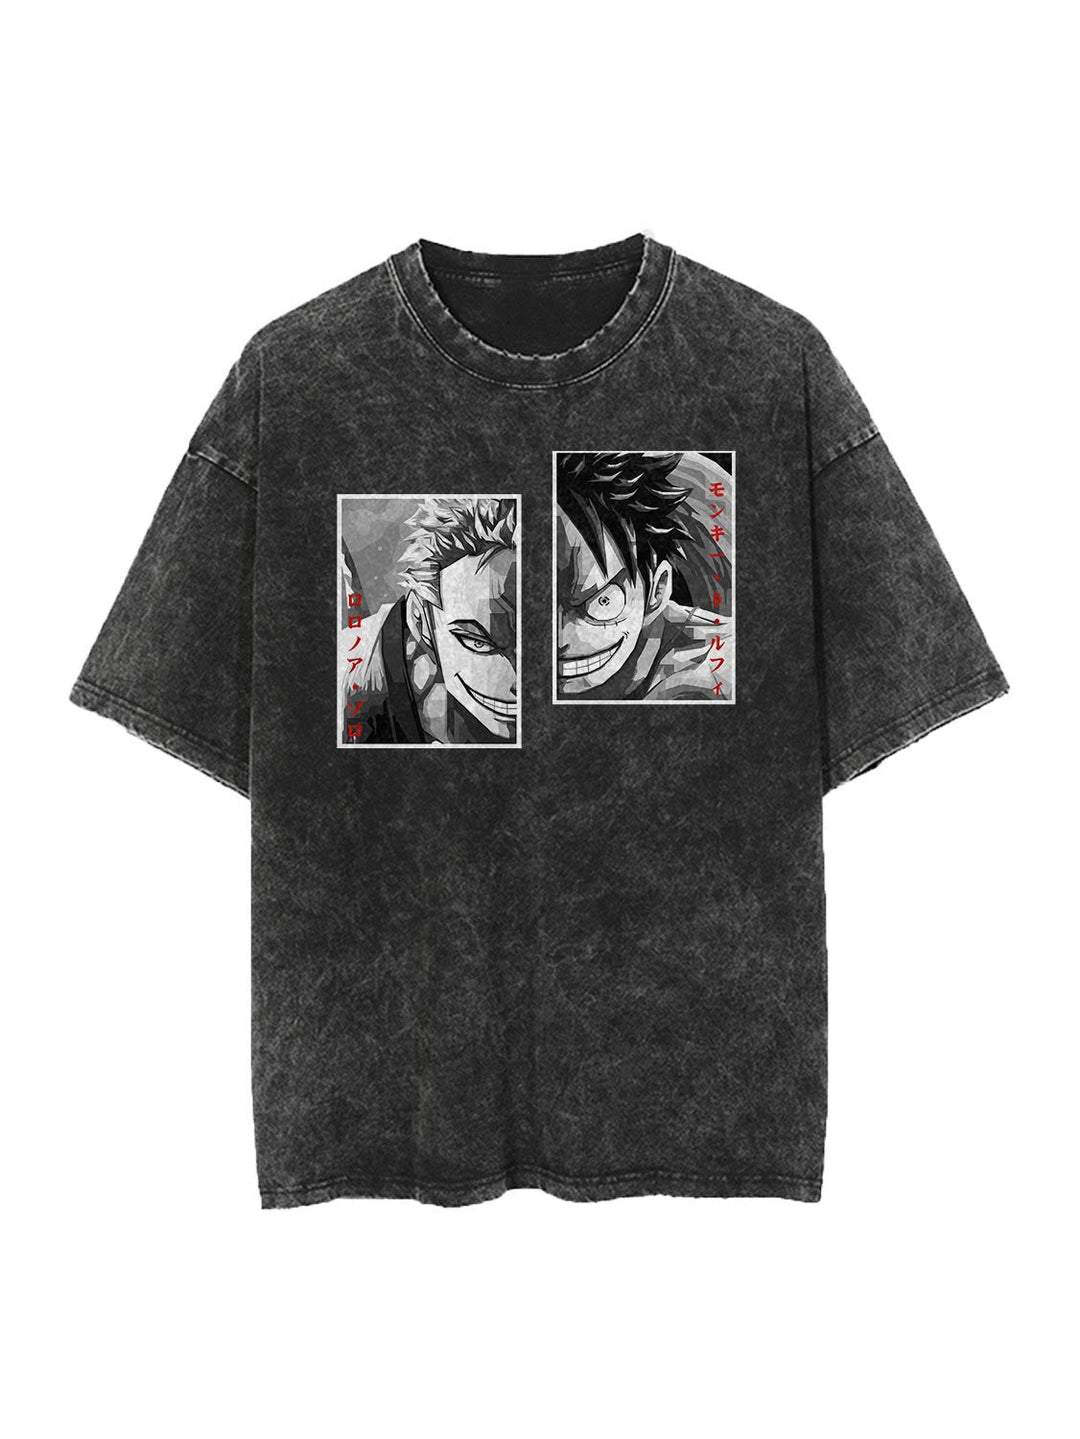 Luffy x Zoro Vintage Shirt